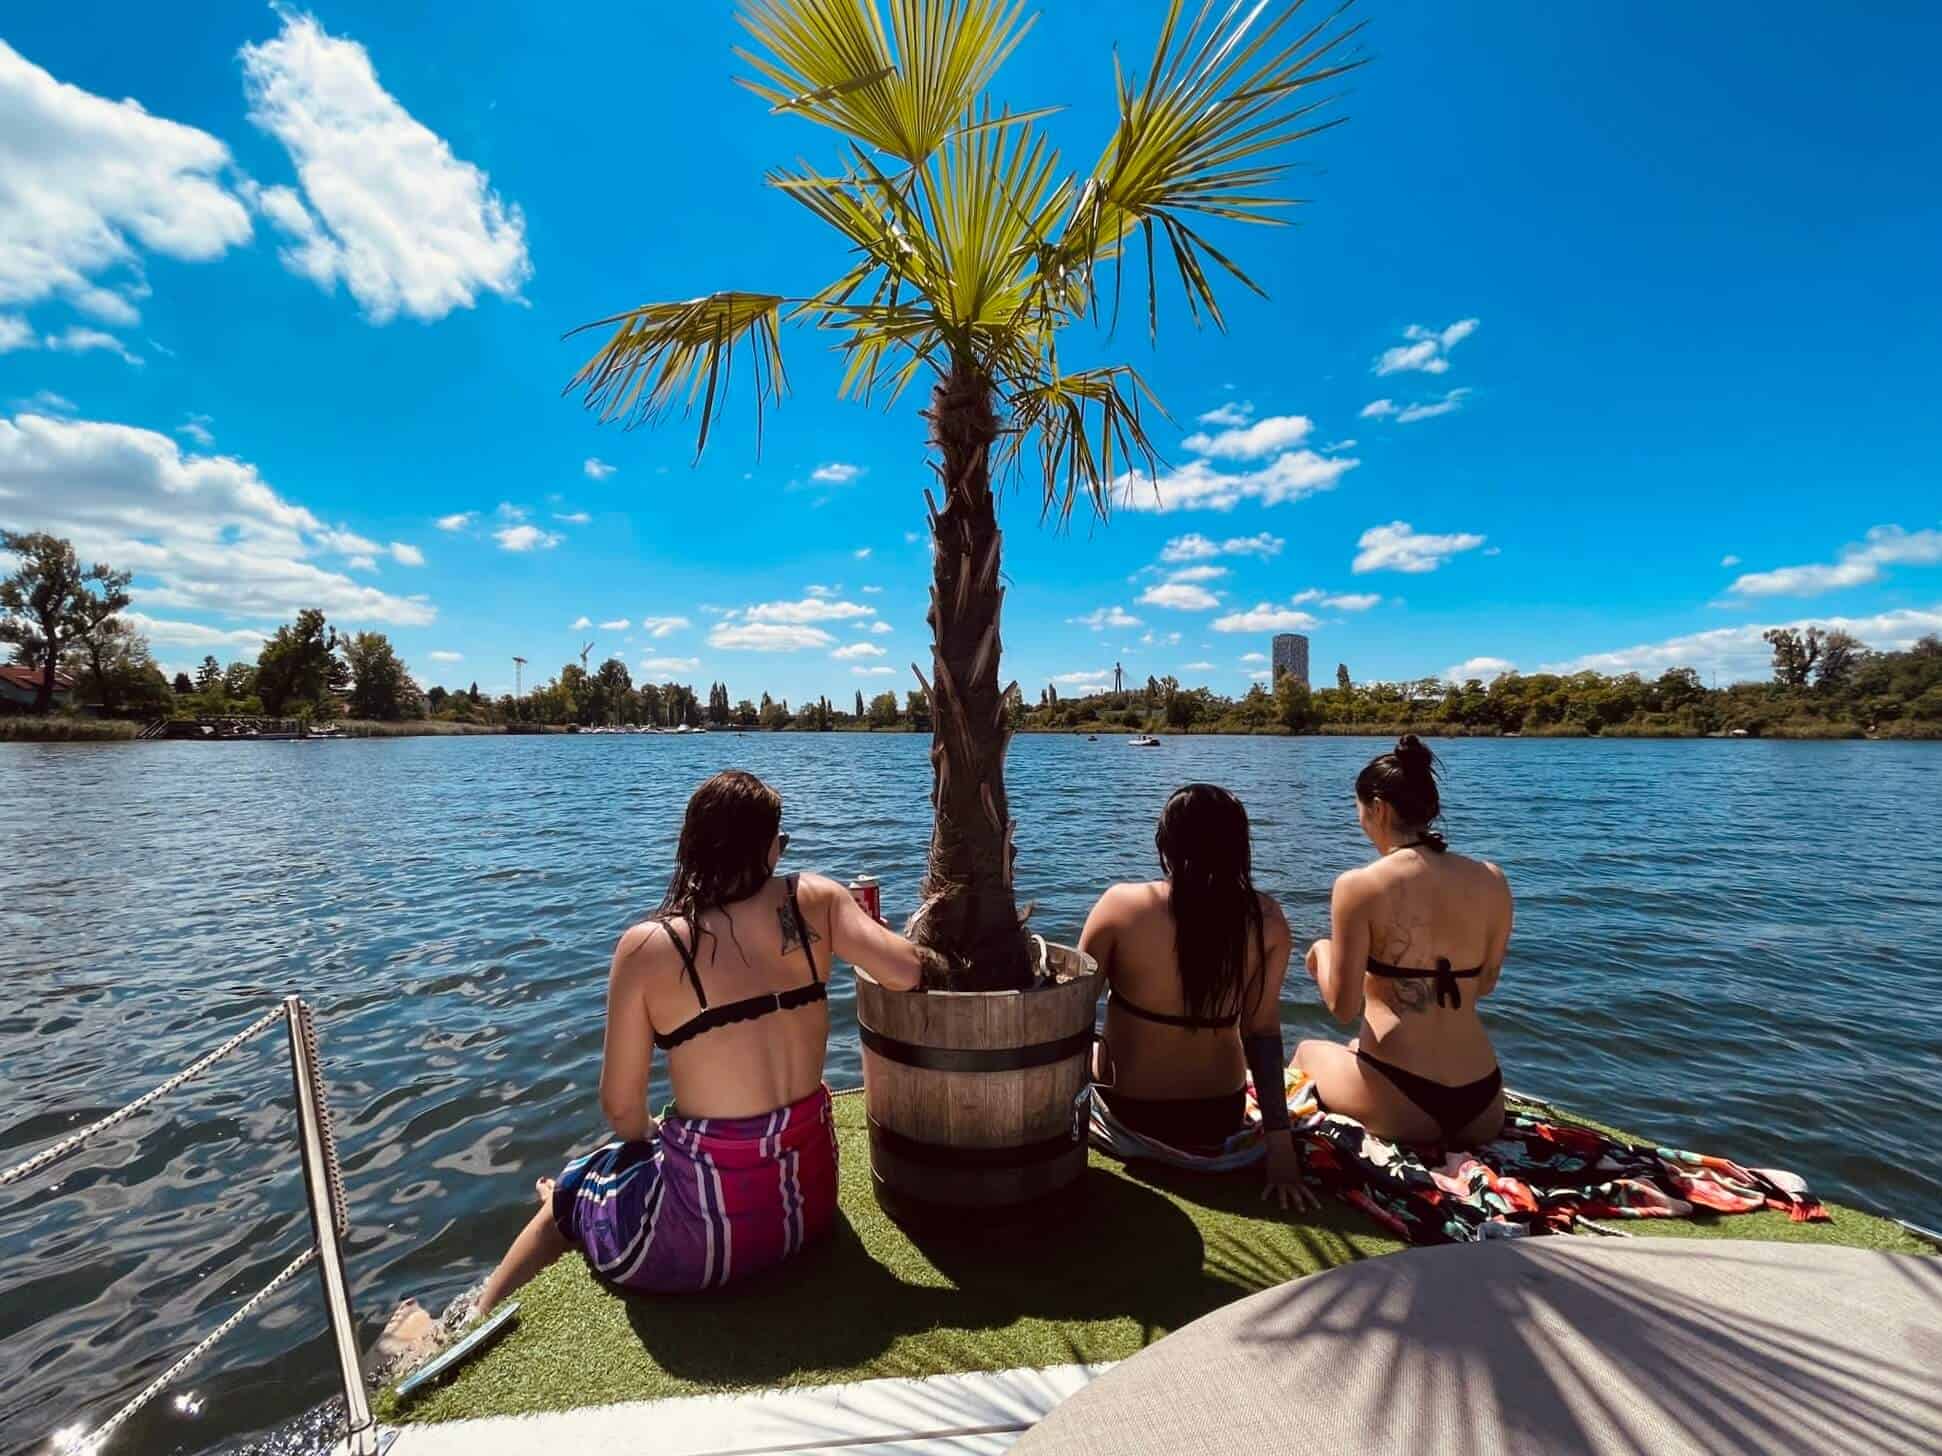 Drei Mädels sitzen am Rande eines Bootes. Am Boot eine Palme im Topf. Aussicht auf die alte Donau. Wasser im Bild. Sehr sonnig.